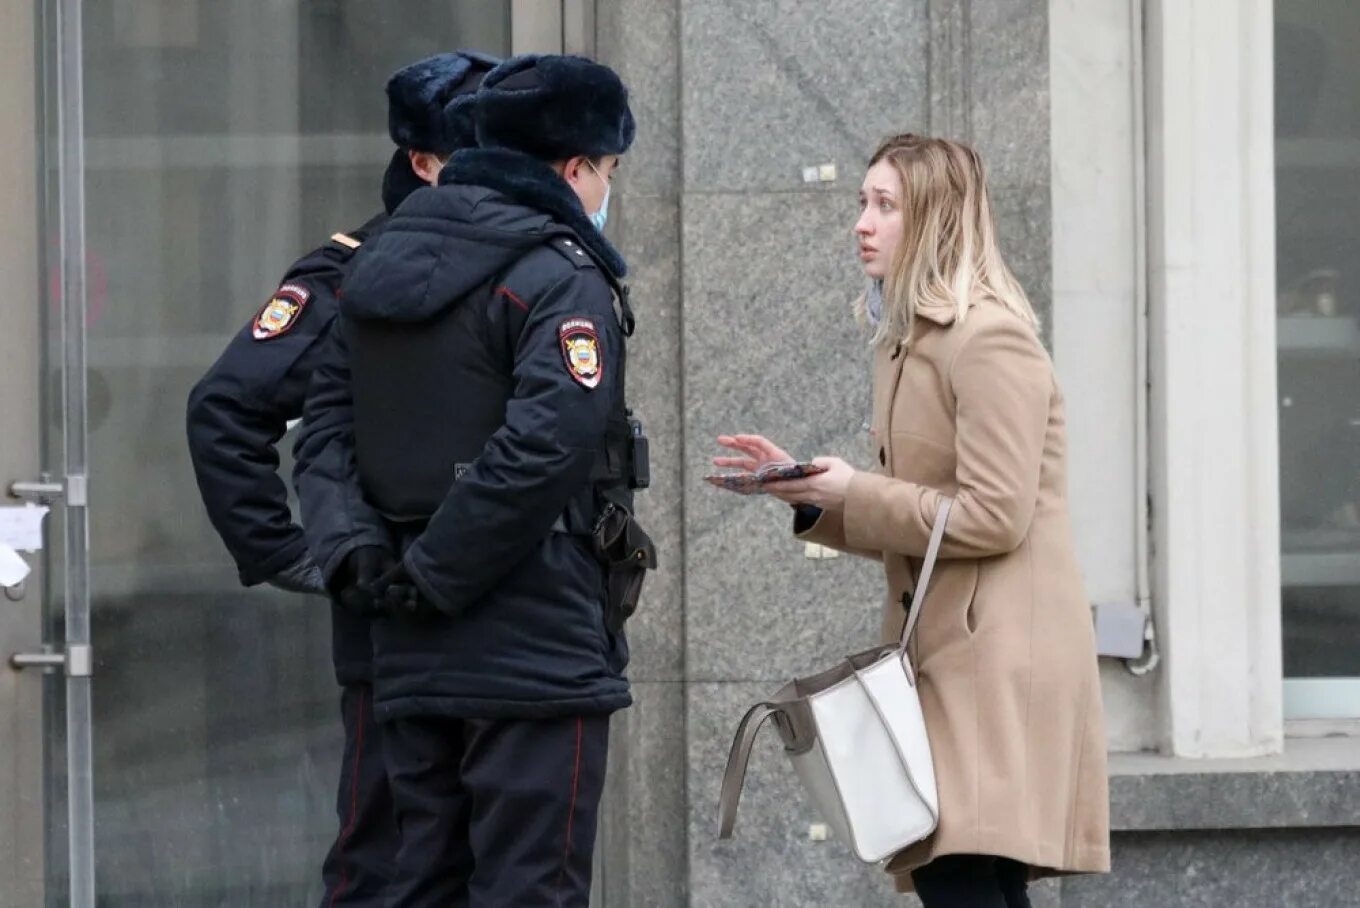 Москва оштрафовано